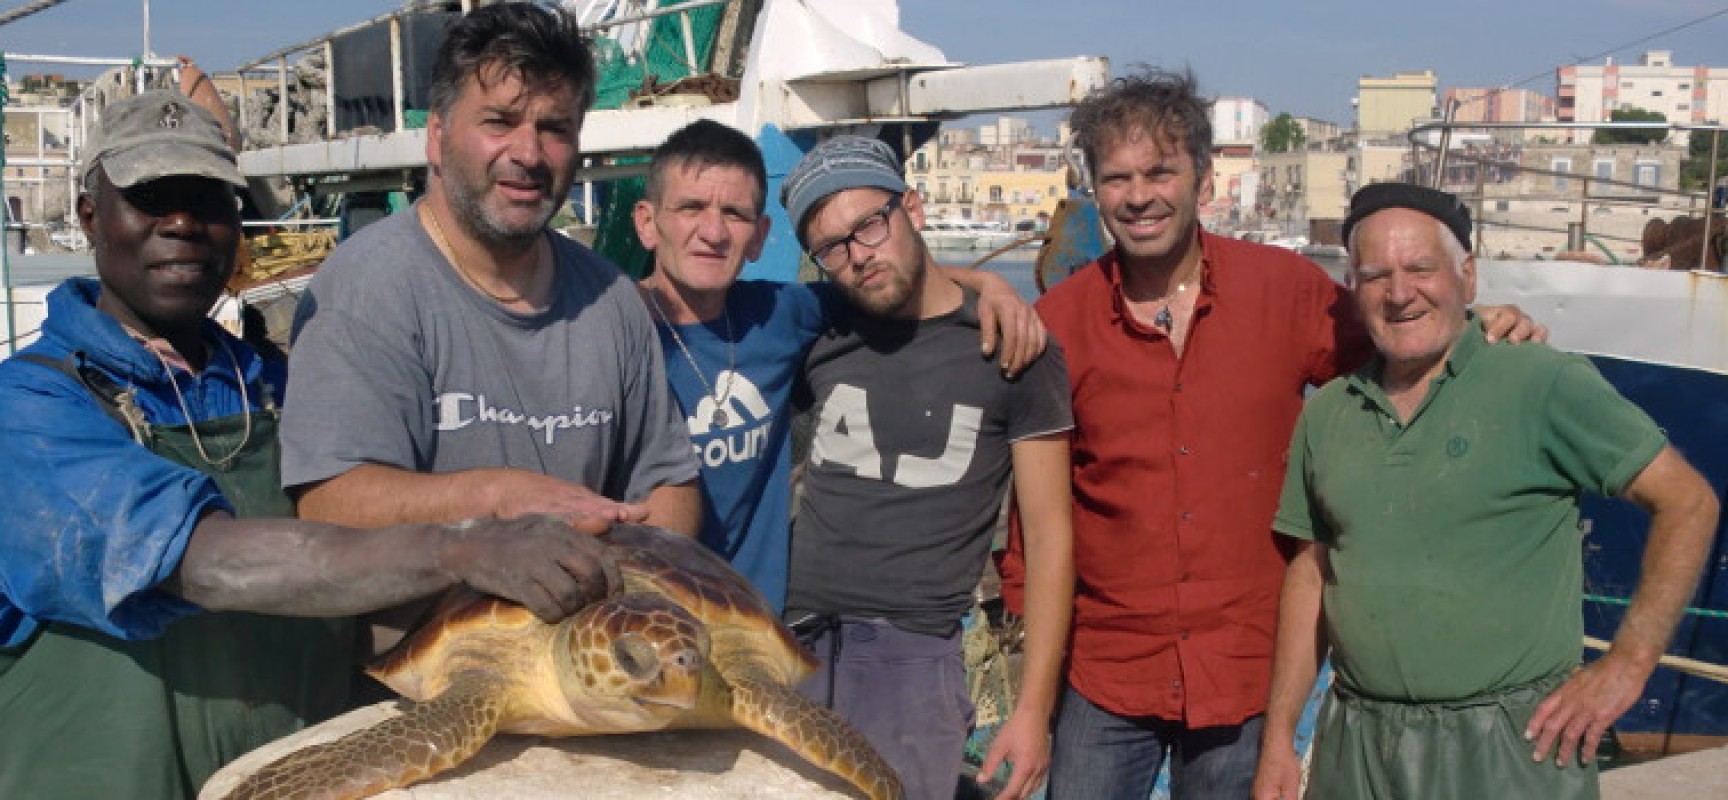 Salvata una tartaruga marina al largo della costa tra Trani e Bisceglie